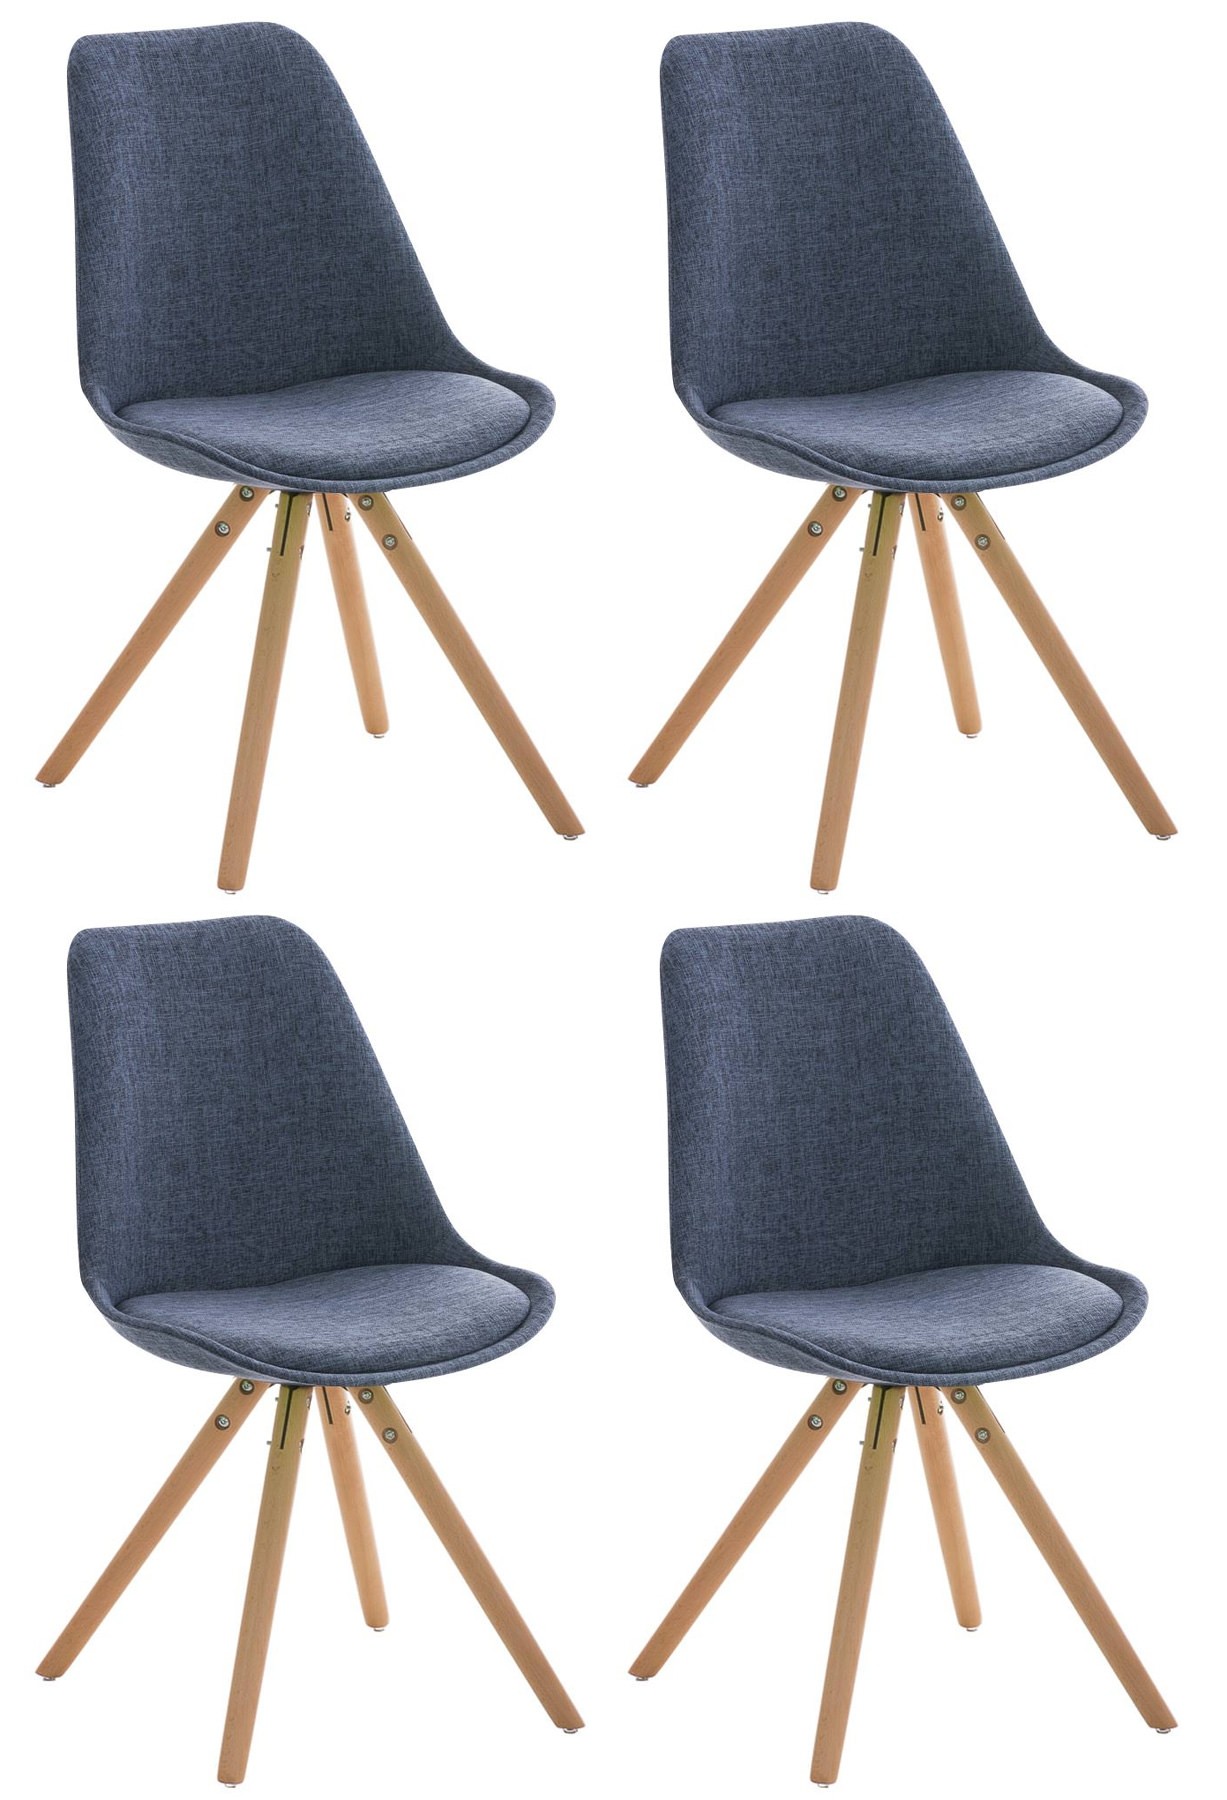 Set de 4 sillas de comedor Pegleg en tela con patas redondas